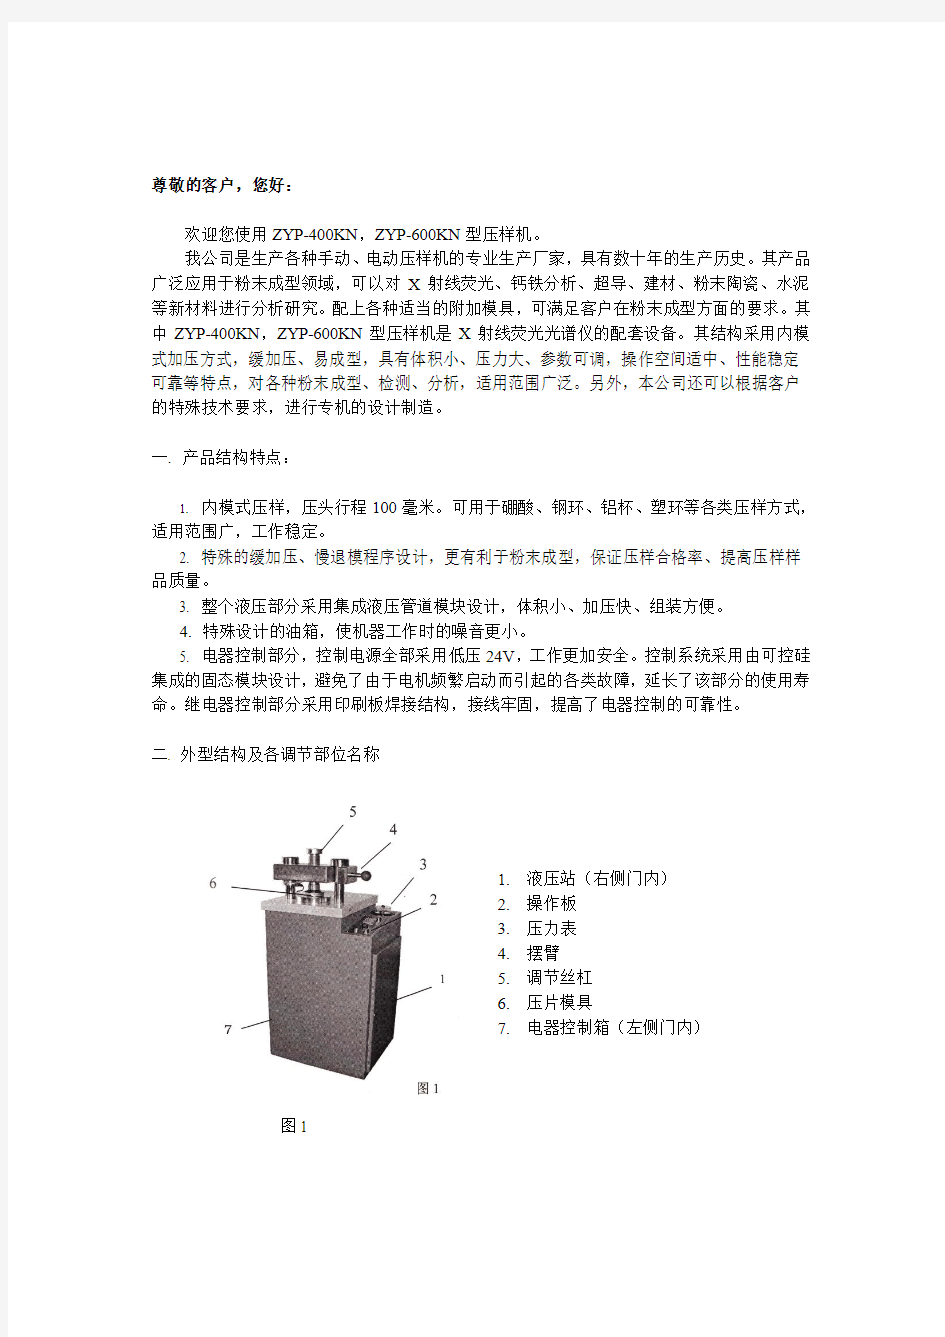 ZYP-400KN ZYP-600KN 自动压样机使用说明书荧光专用自动压片机